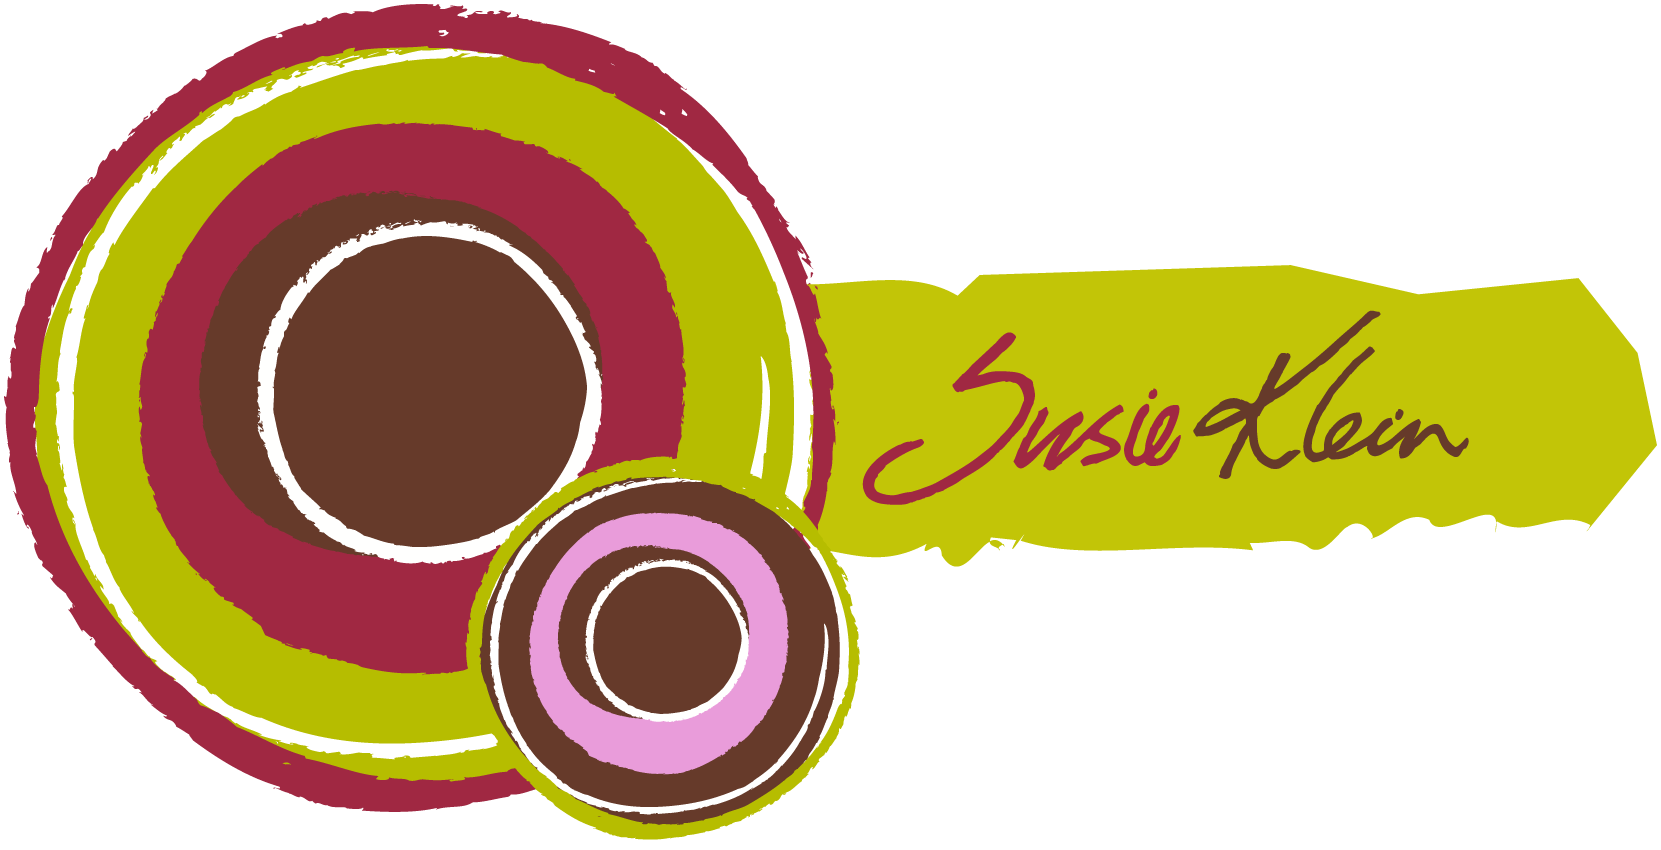 Susie Klein logo